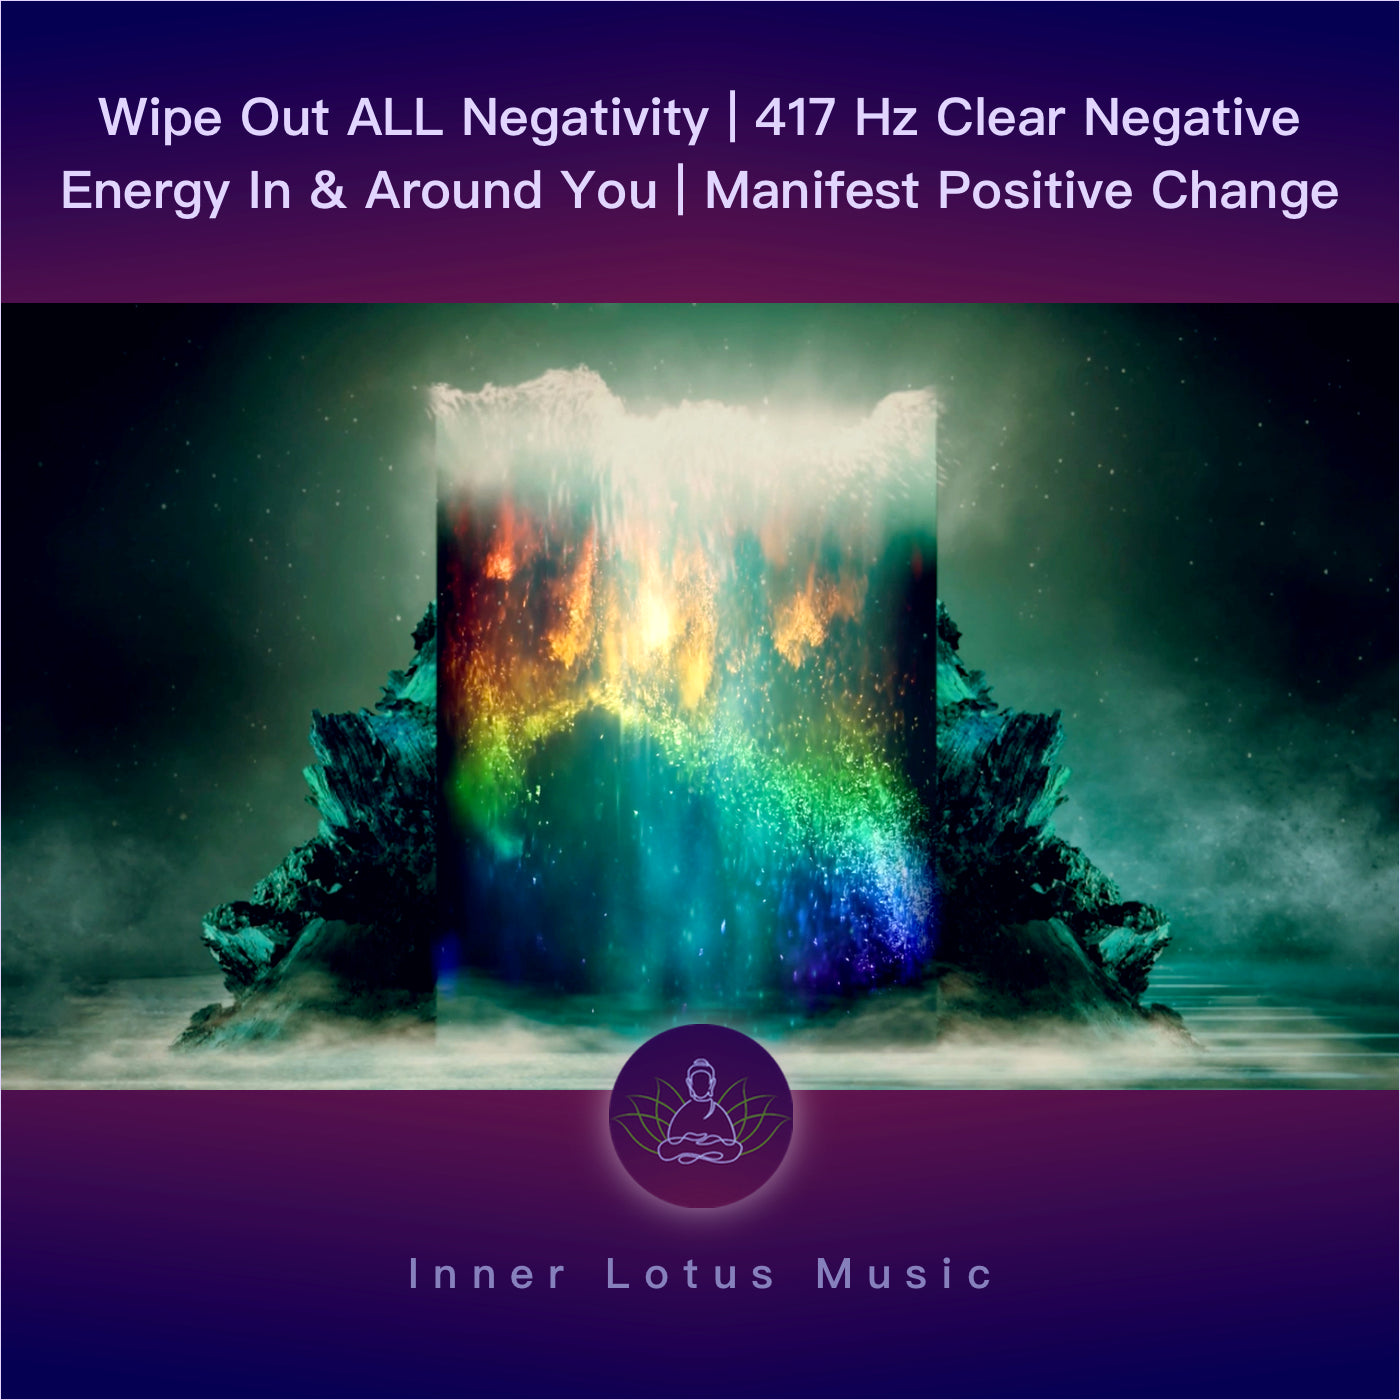 Beseitige ALLES Negative | Reinige Deine Energie & Manifestiere Positive Veränderung | 417 Hz Musik